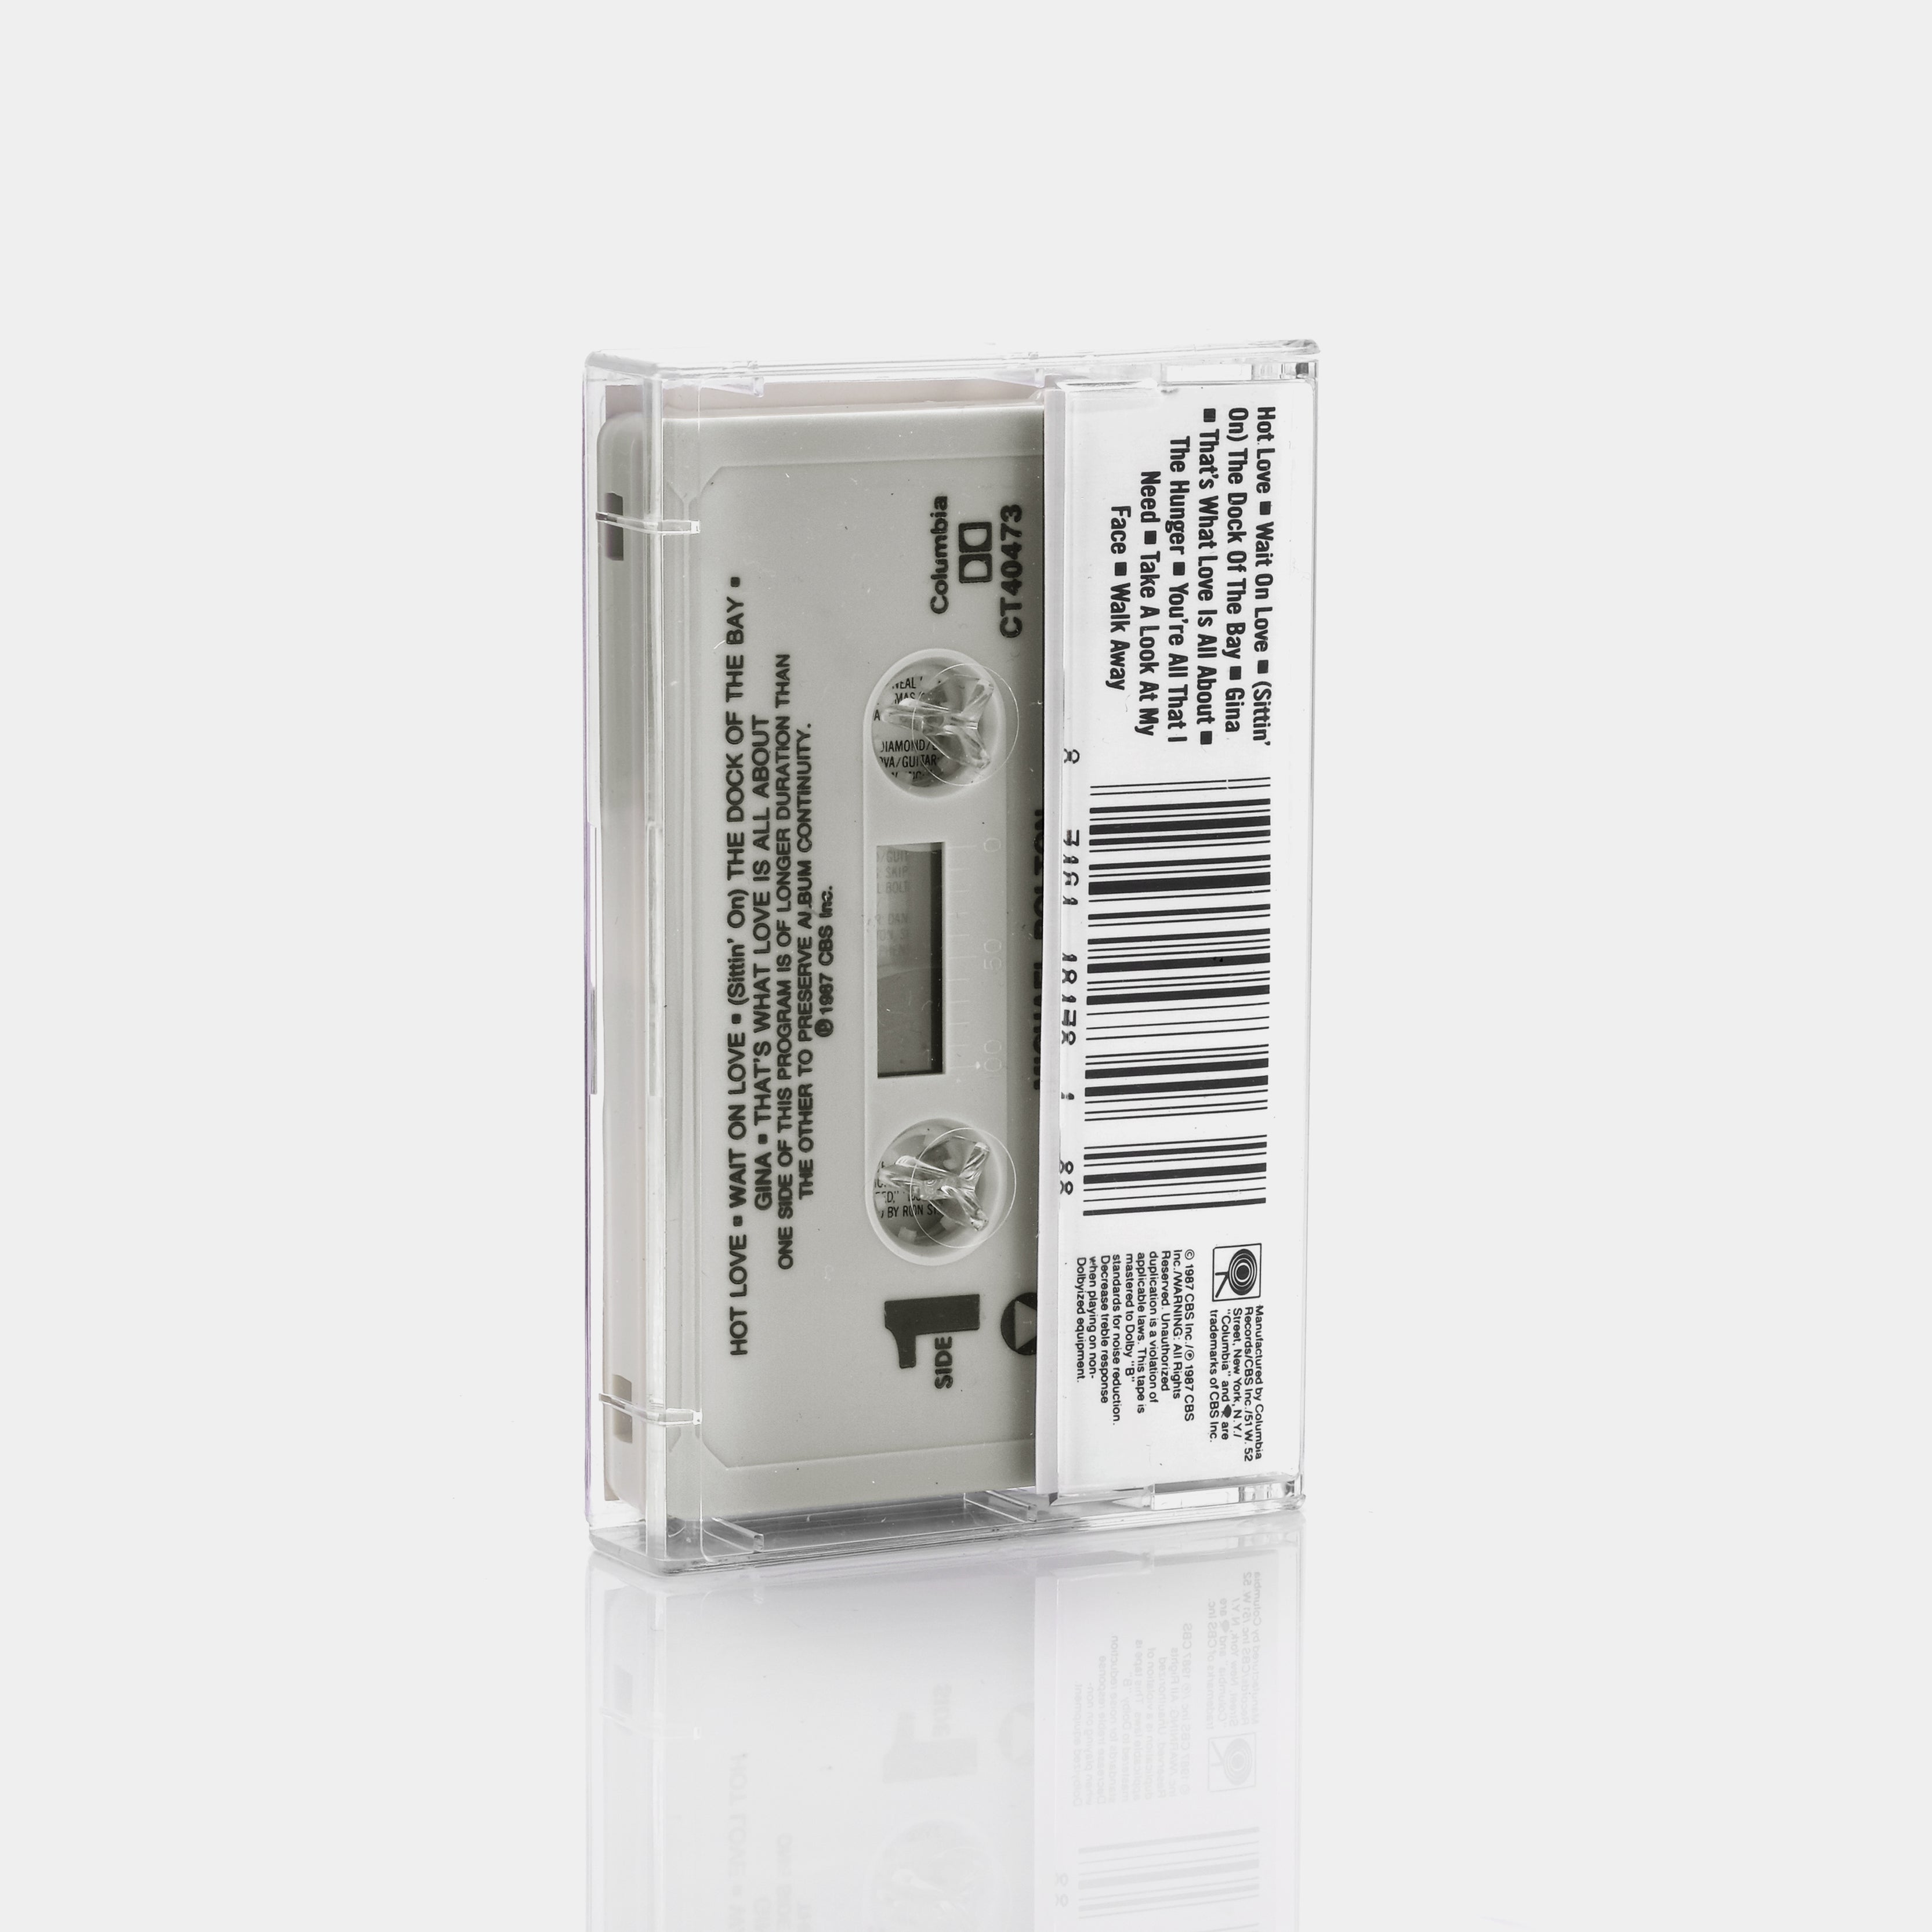 Michael Bolton - The Hunger Cassette Tape